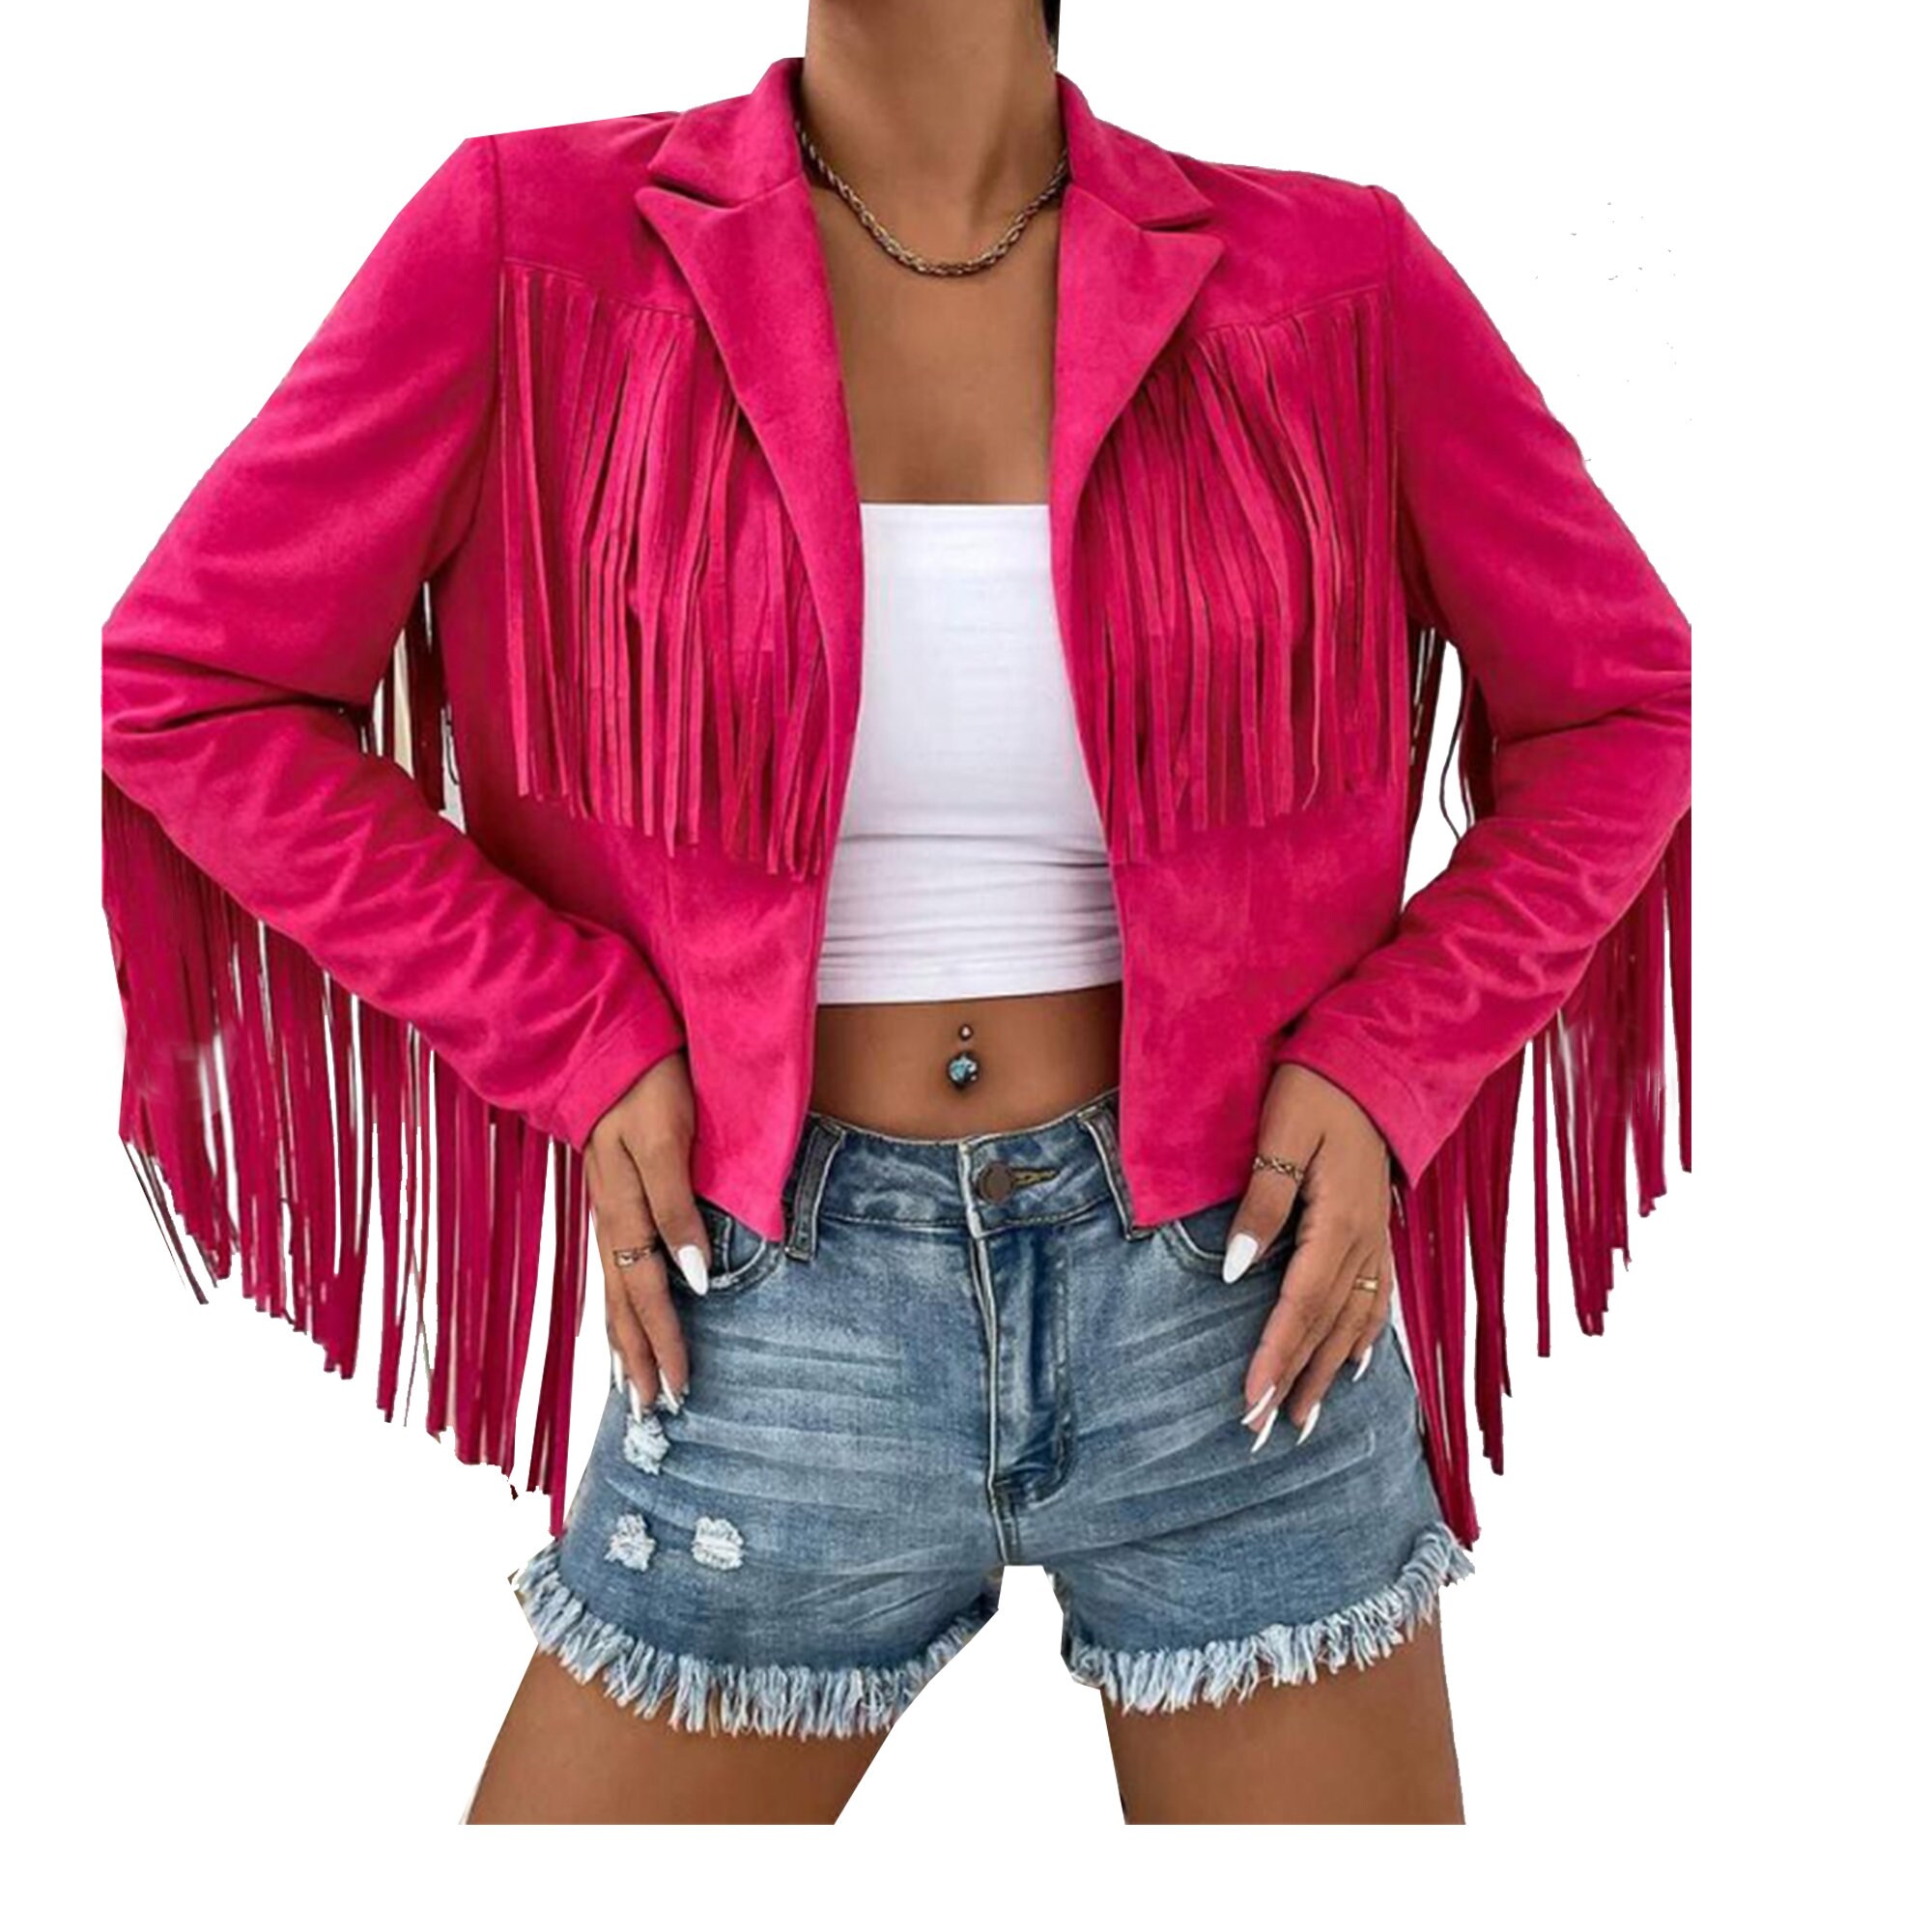 Hot Pink Fringe Cropped Jacket - blendedvintagemarketplace